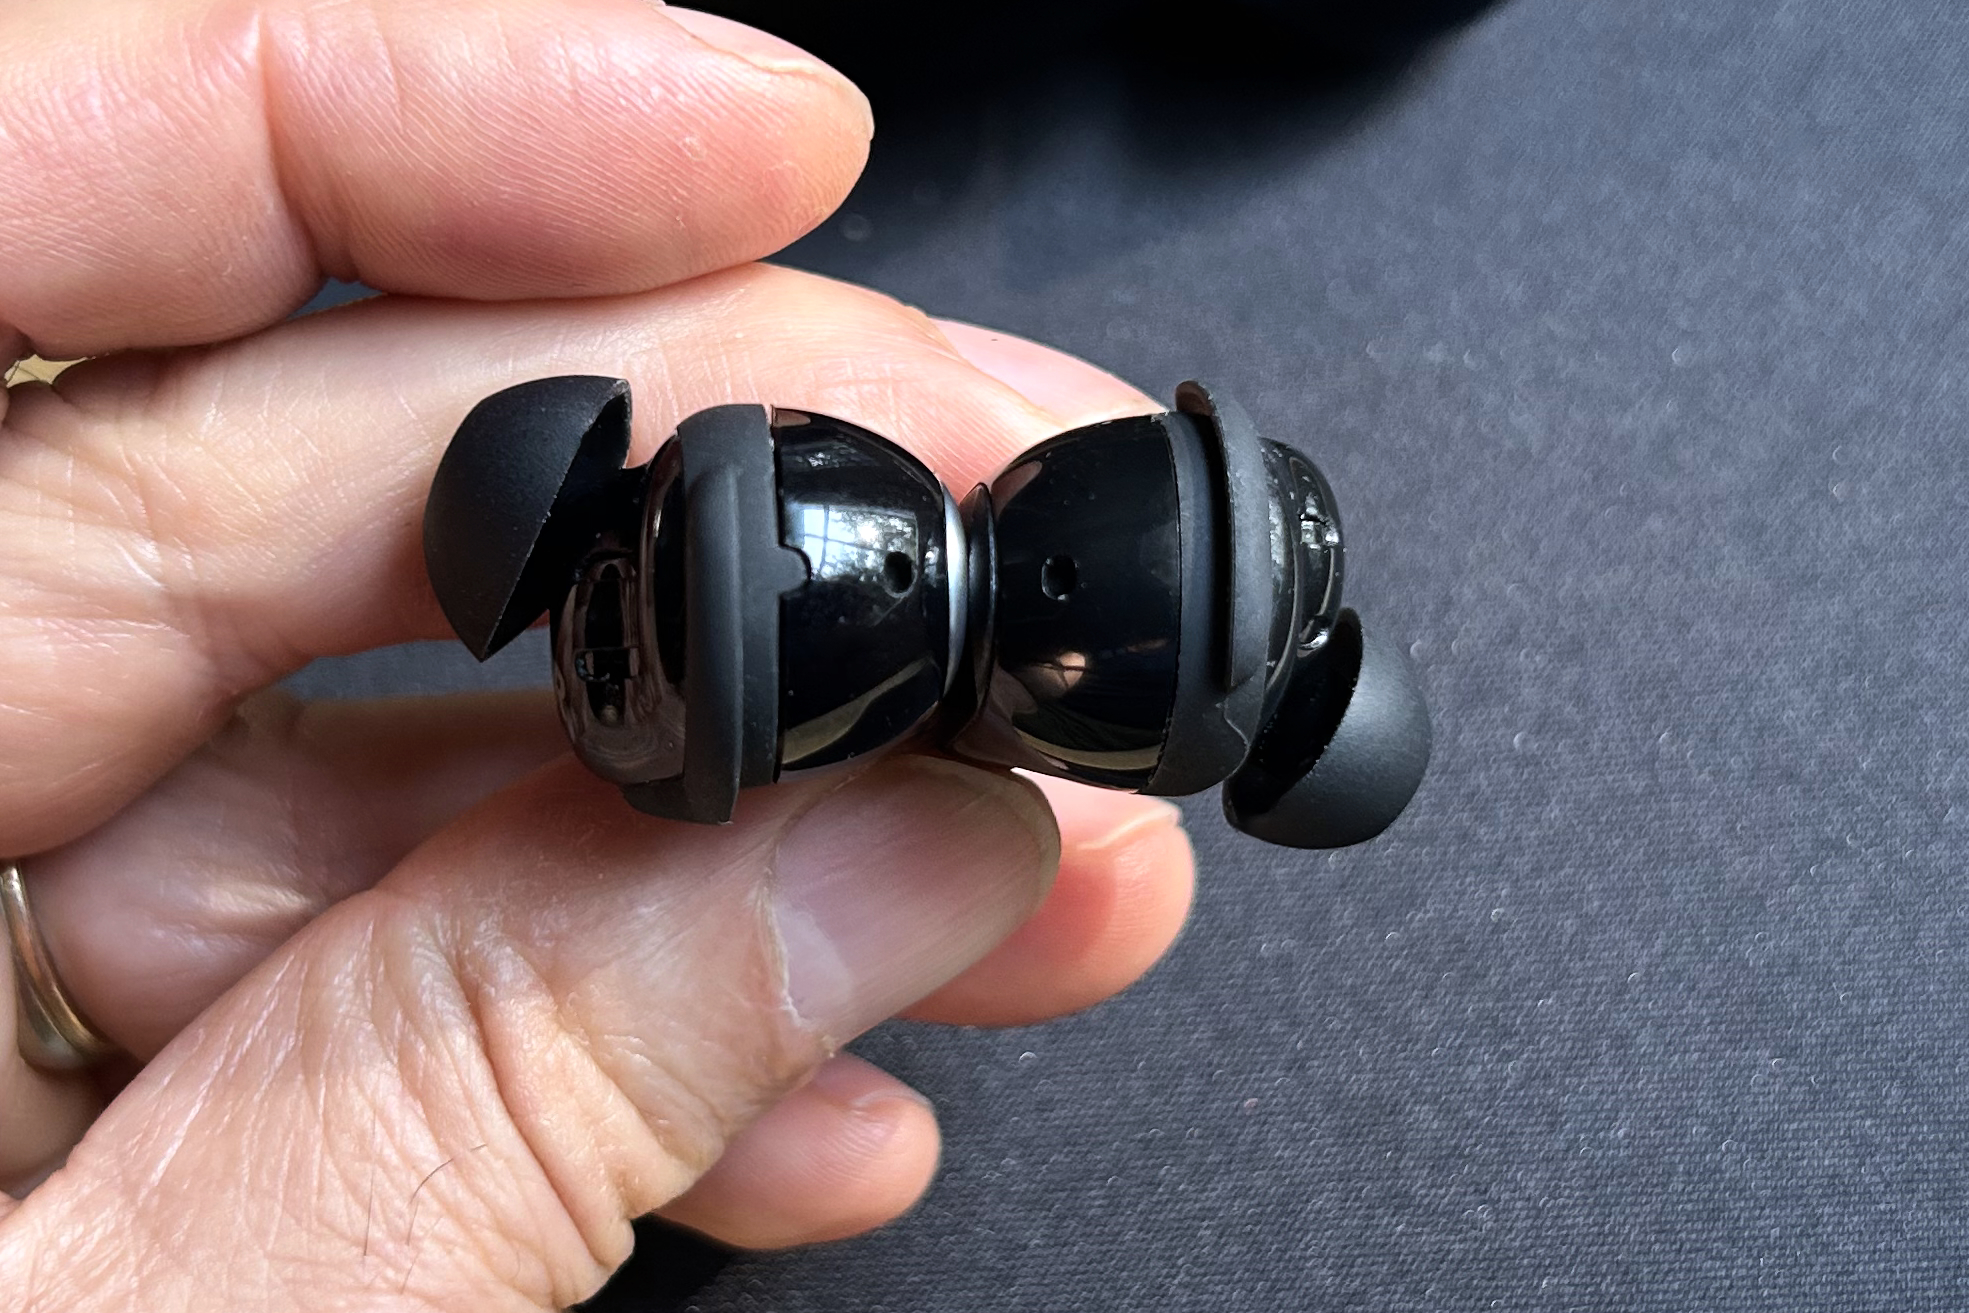 Bose QuietComfort Ultra headphones and earbuds hands-on